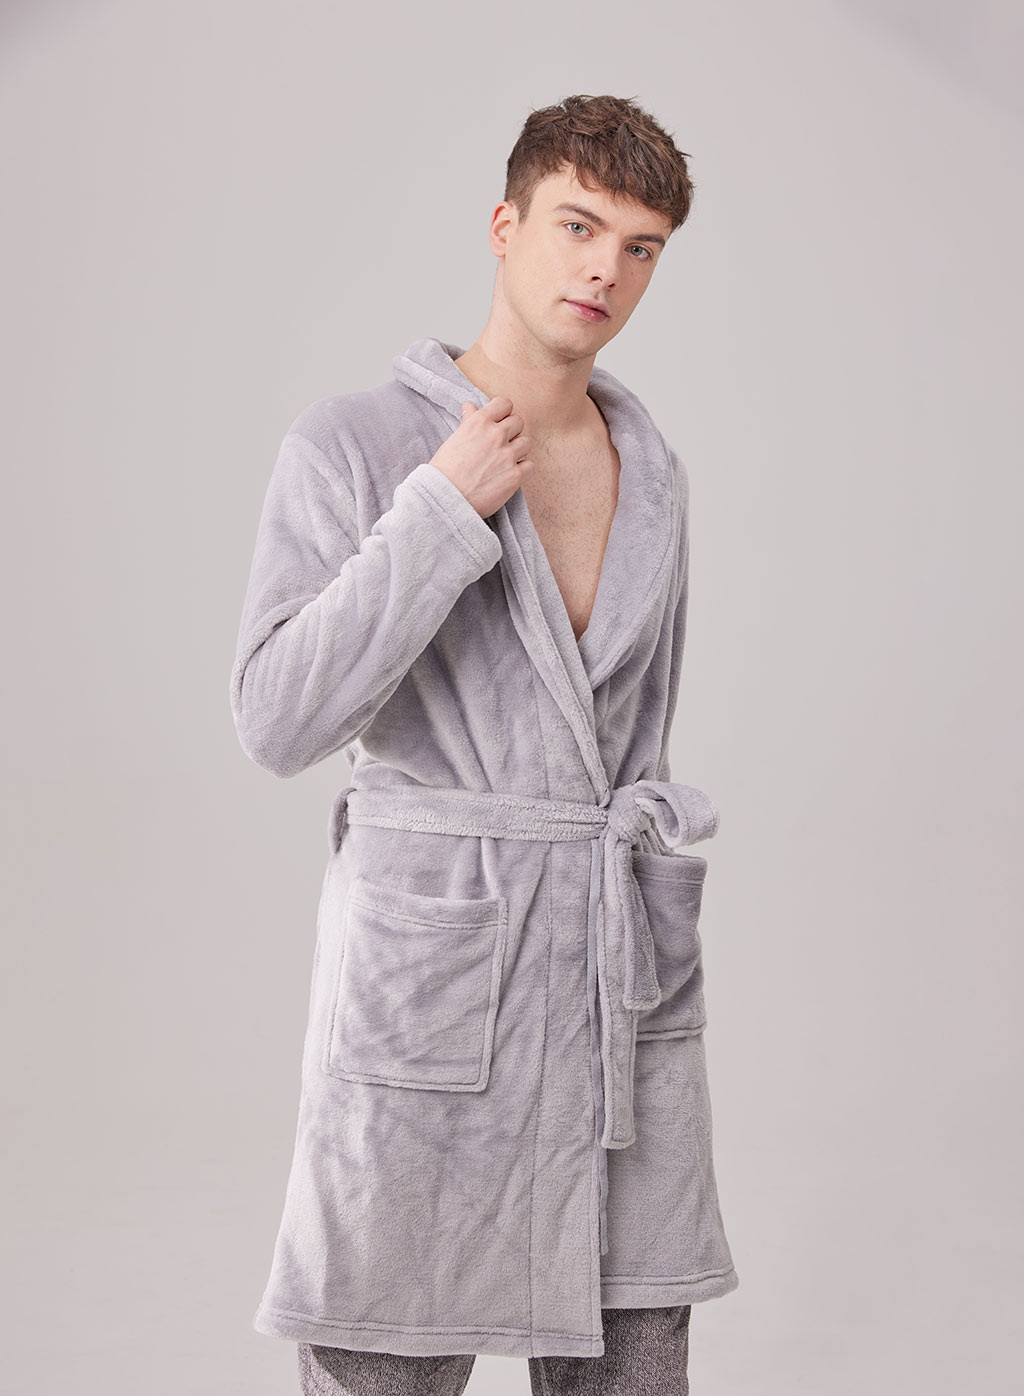 Men's Sleepwear & Loungewear, Pajamas & Robes